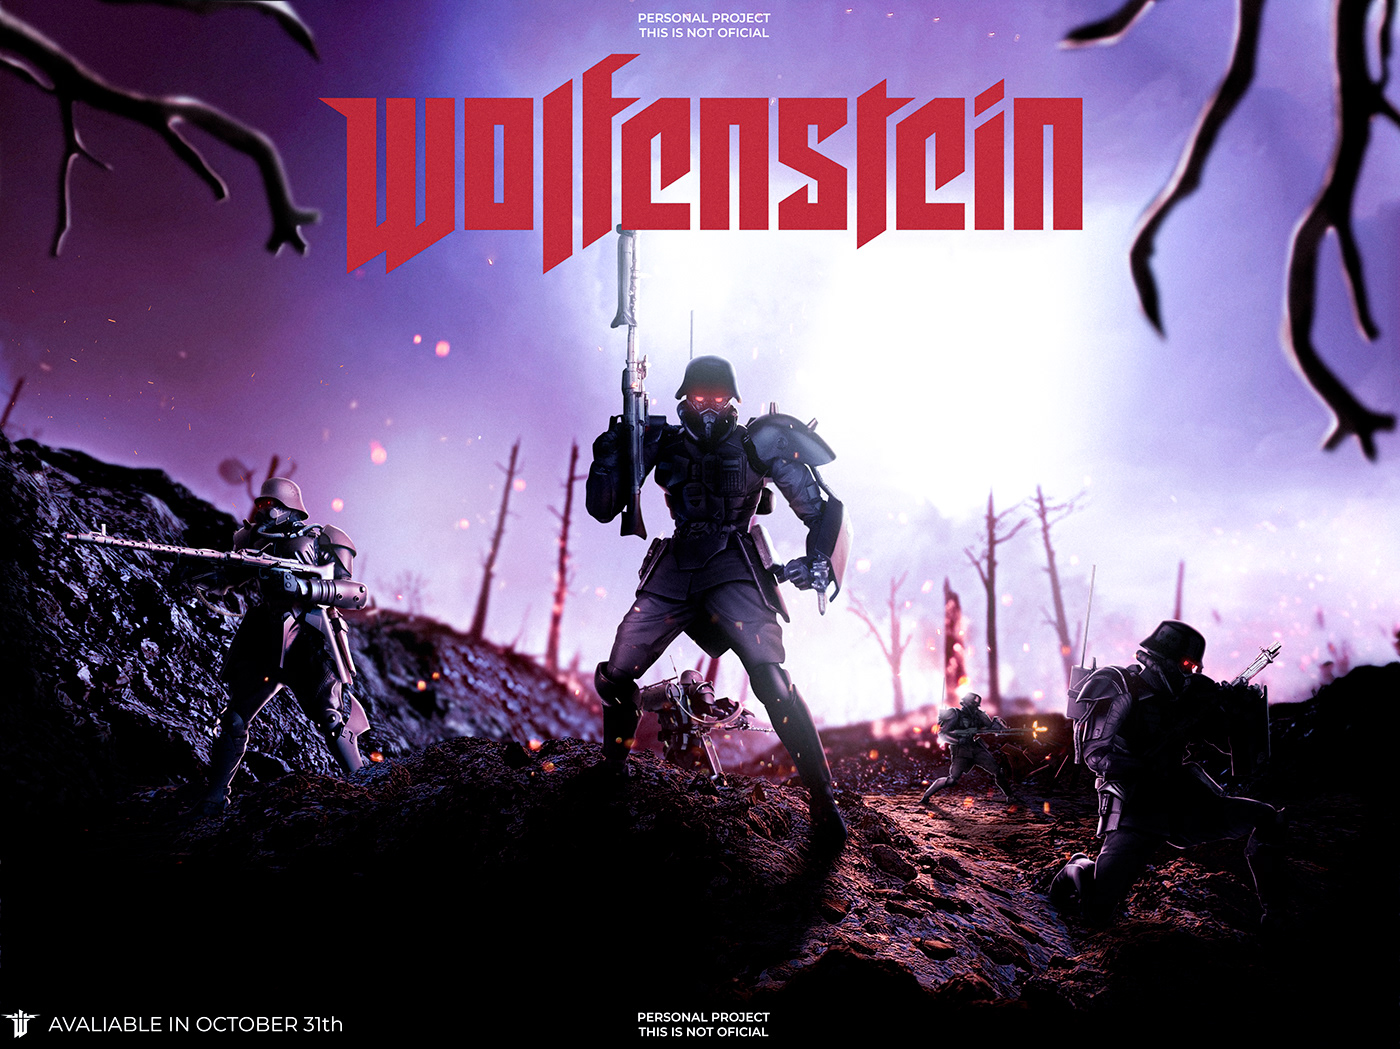 Wolfenstein poster art manipulation Manipulation Art light War Military soldier concept art